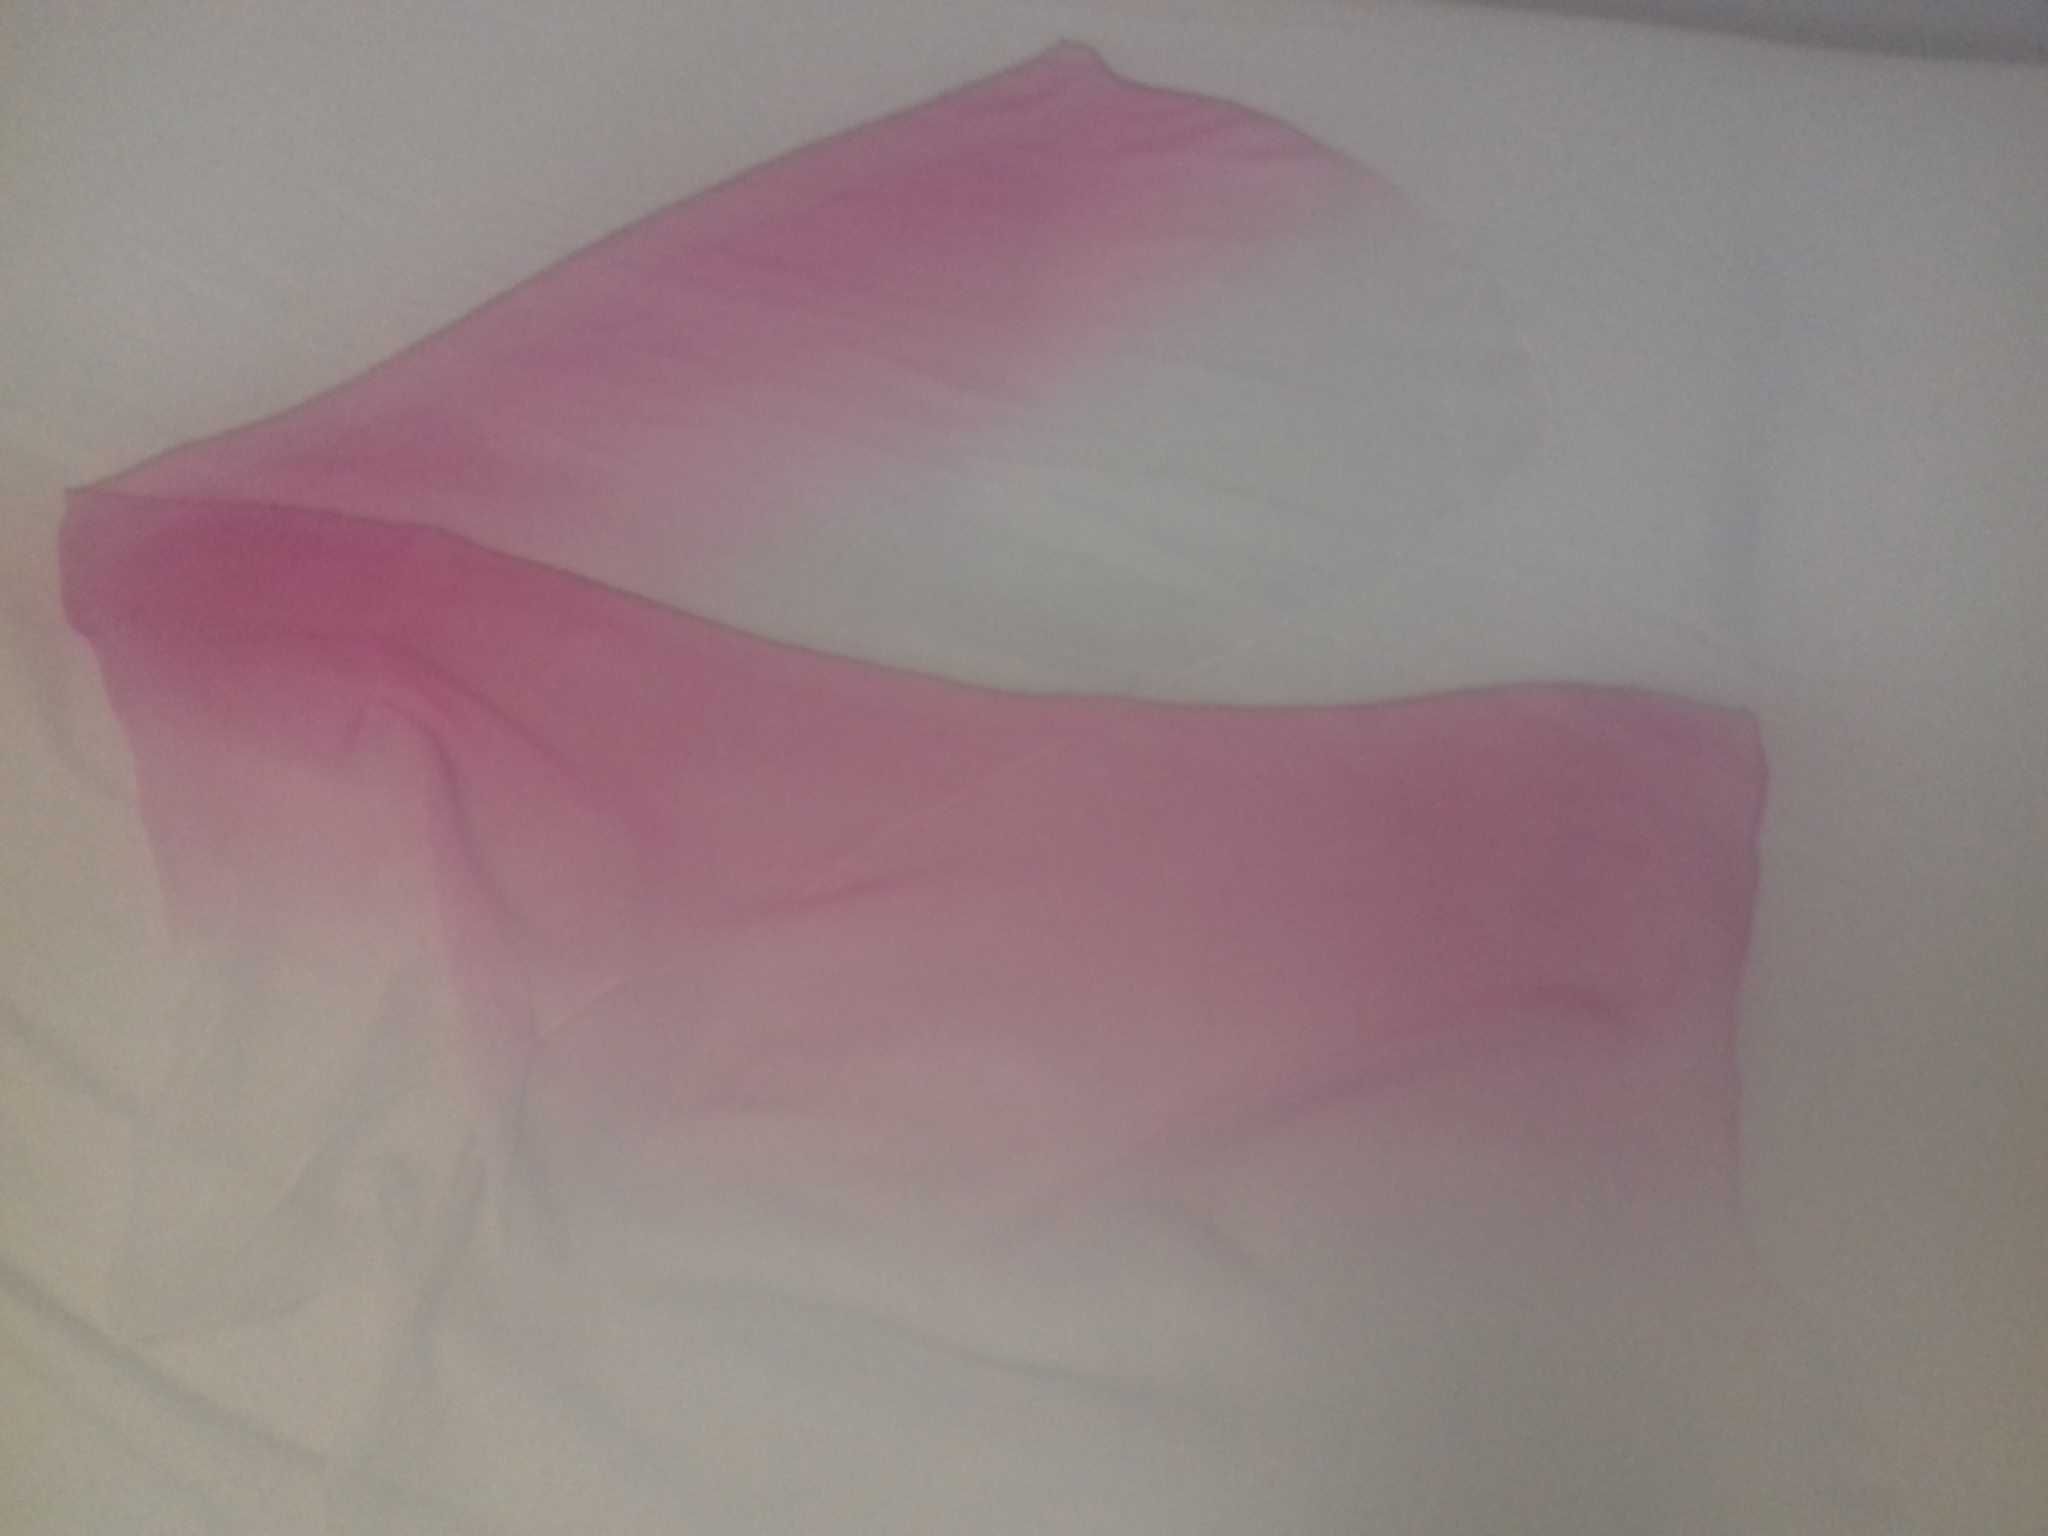 szal różowo - biały, jak mgiełka, 50 x 120